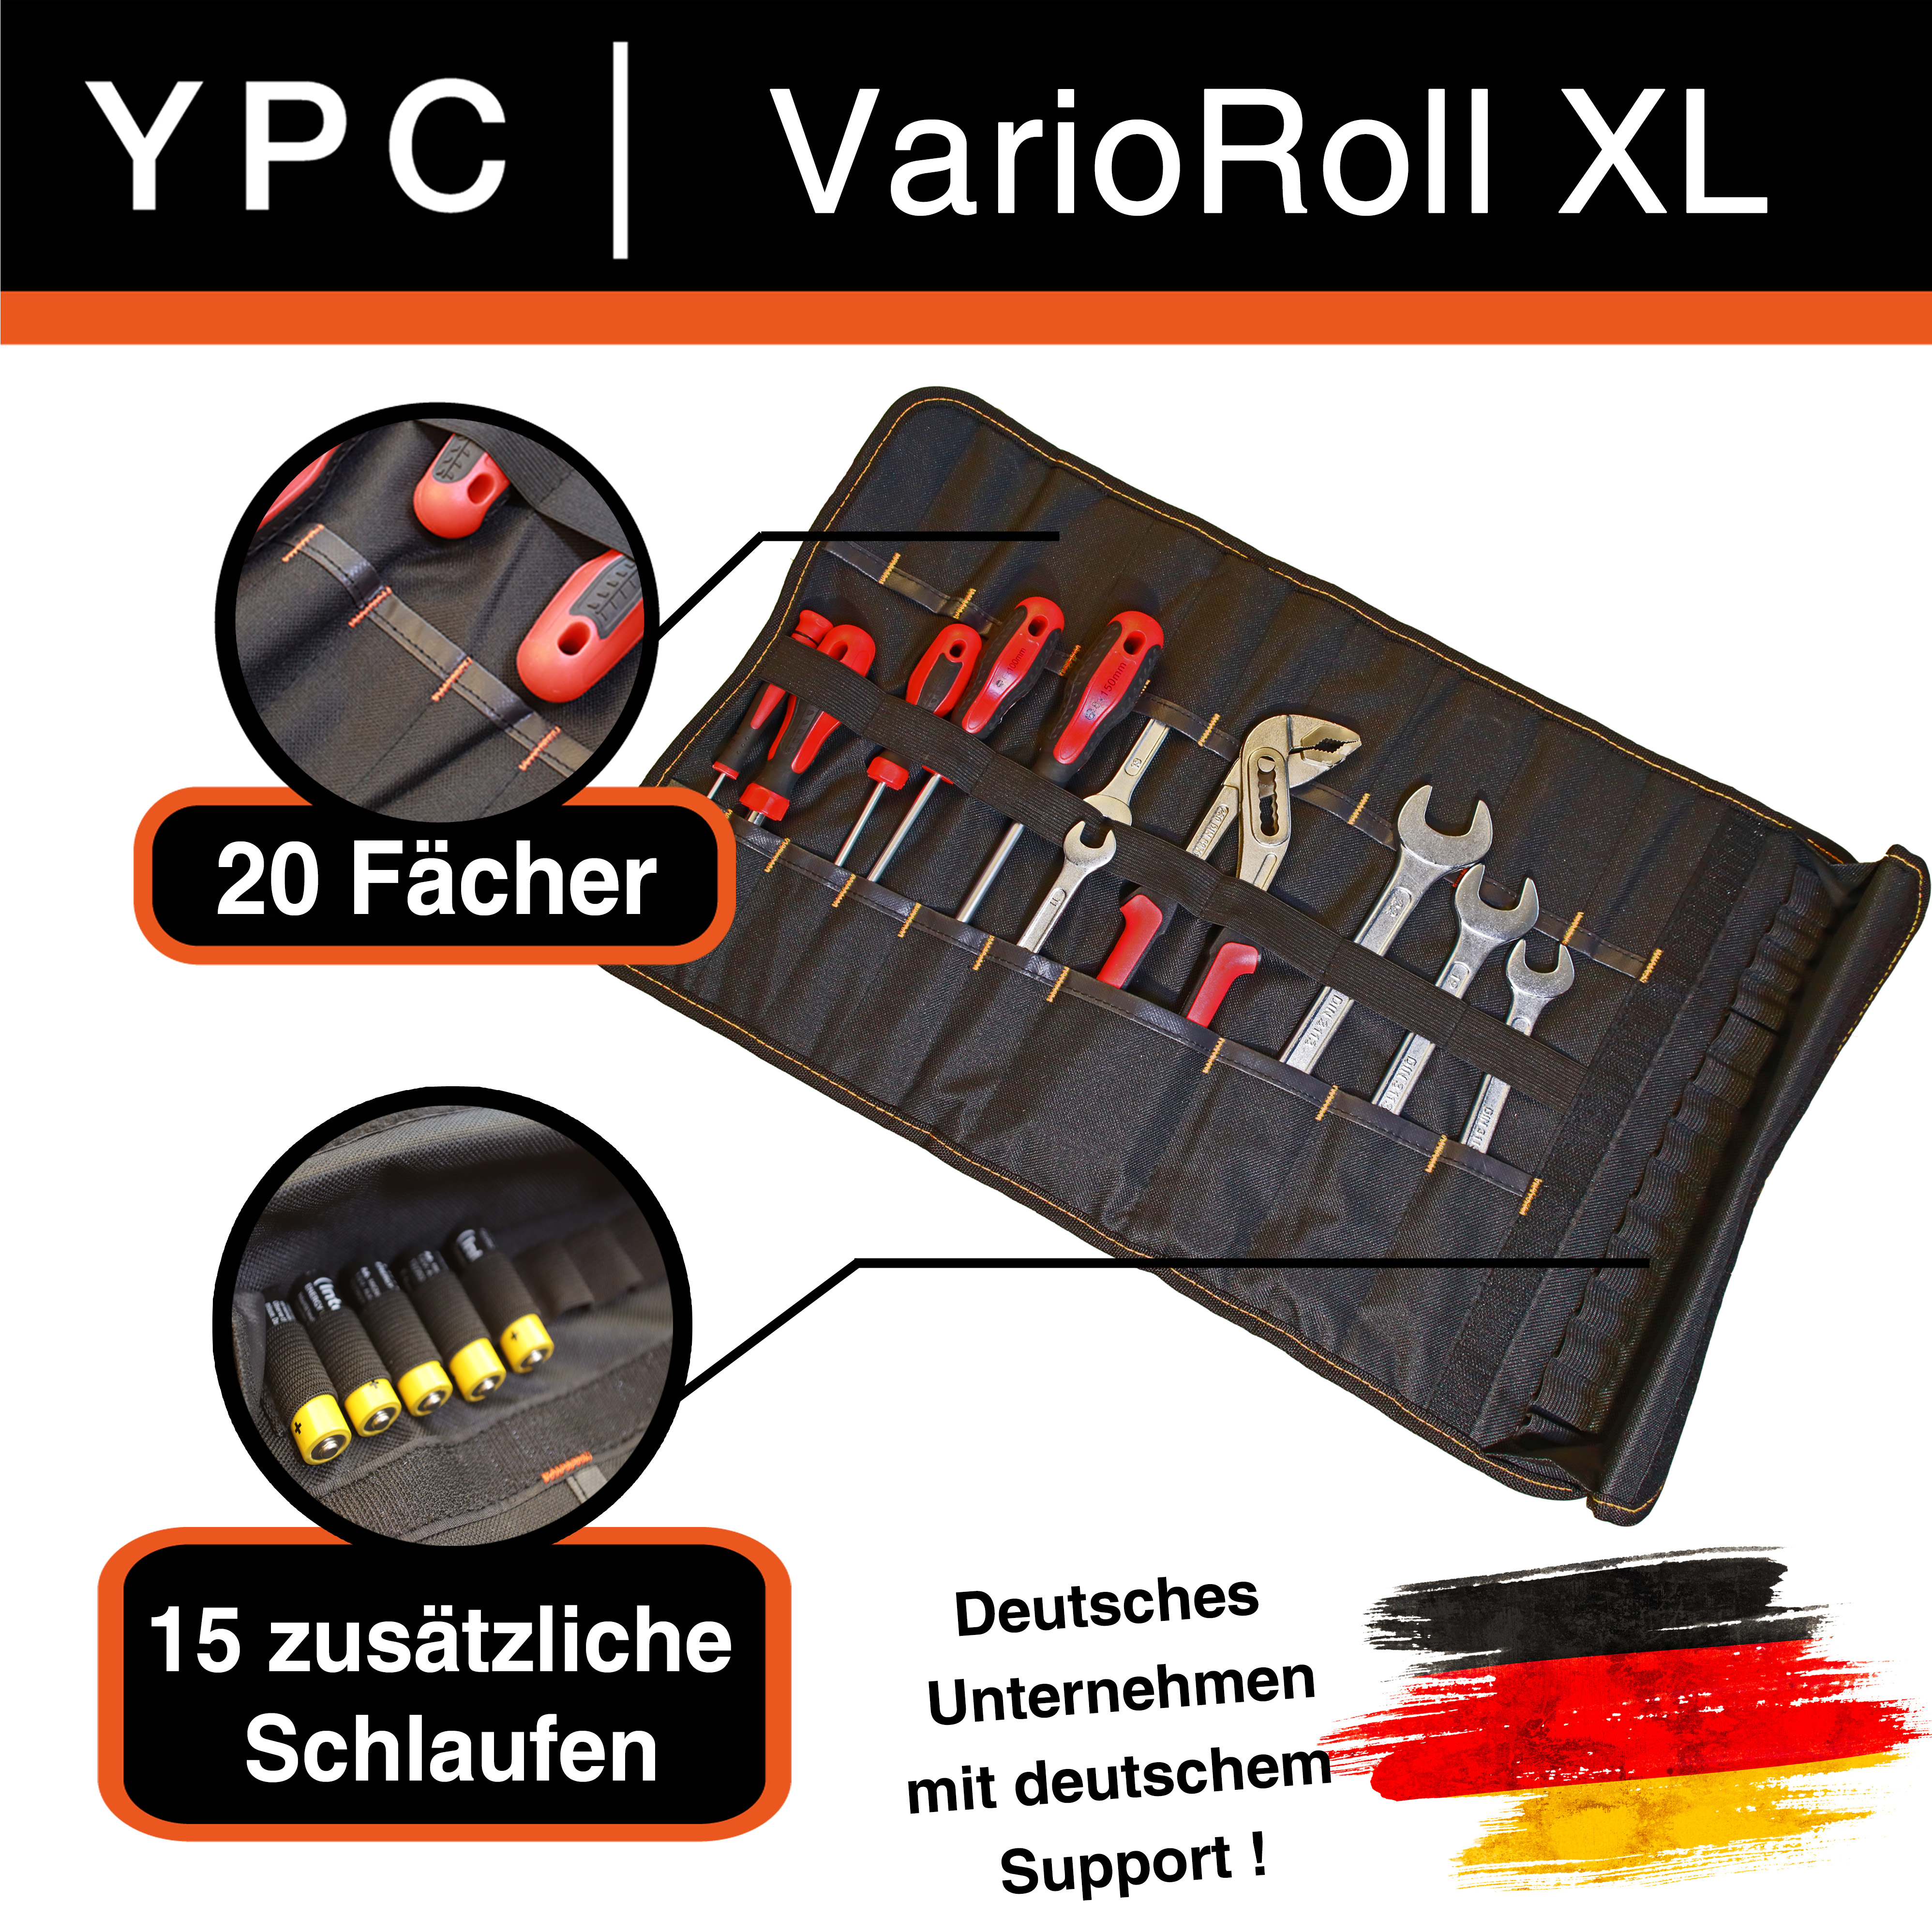 "VarioRoll XL" Werkzeug Rolltasche 56x34cm, 20 Steckfächer und 15 Halteschlaufen, Blau-Schwarz